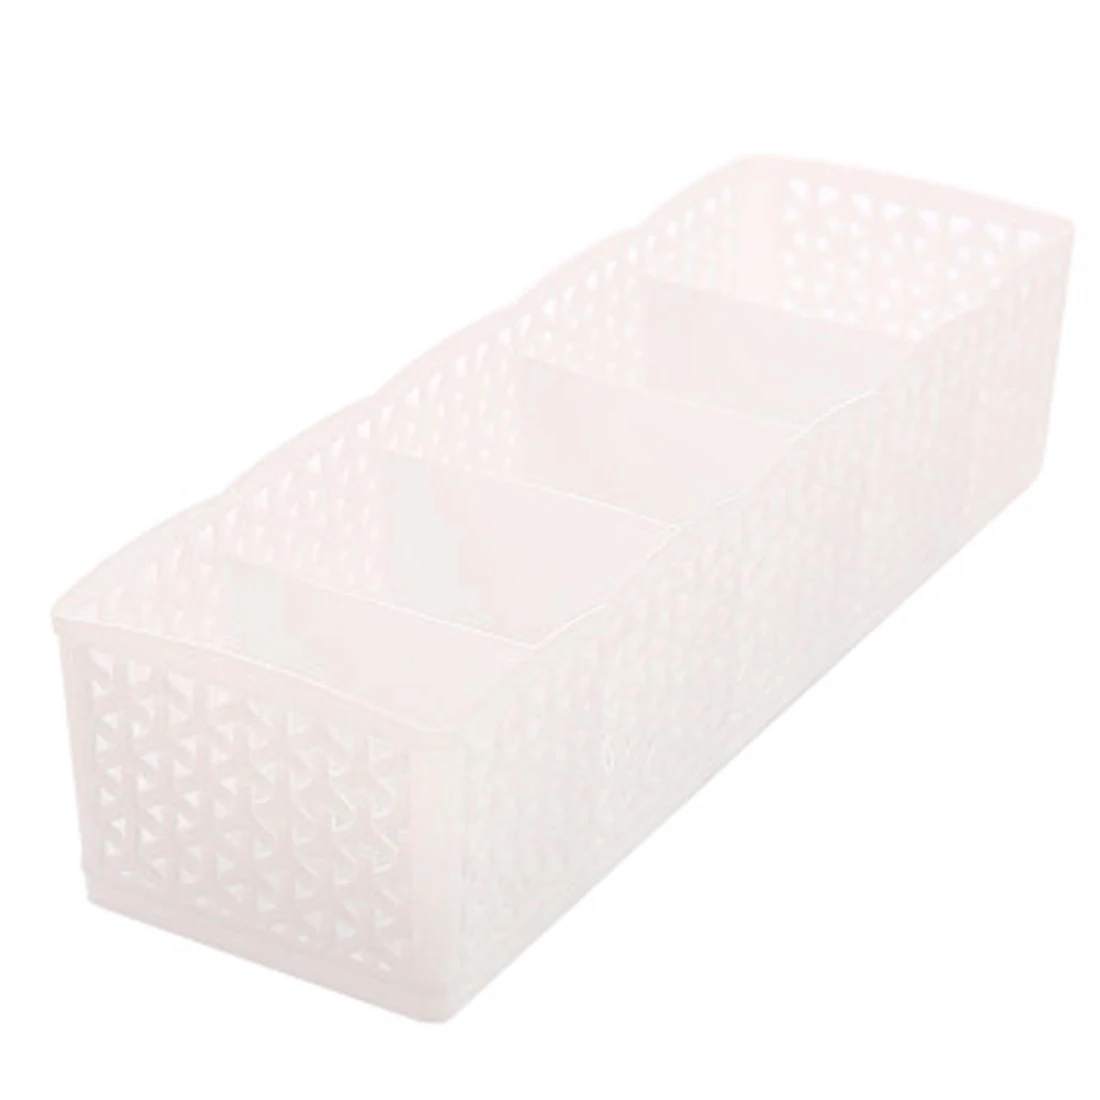 5 Сетка пластиковая коробка для хранения Коробка для хранения галстука бюстгальтер носки ящик косметический сепаратор высокое качество уборка контейнер Органайзер - Цвет: White